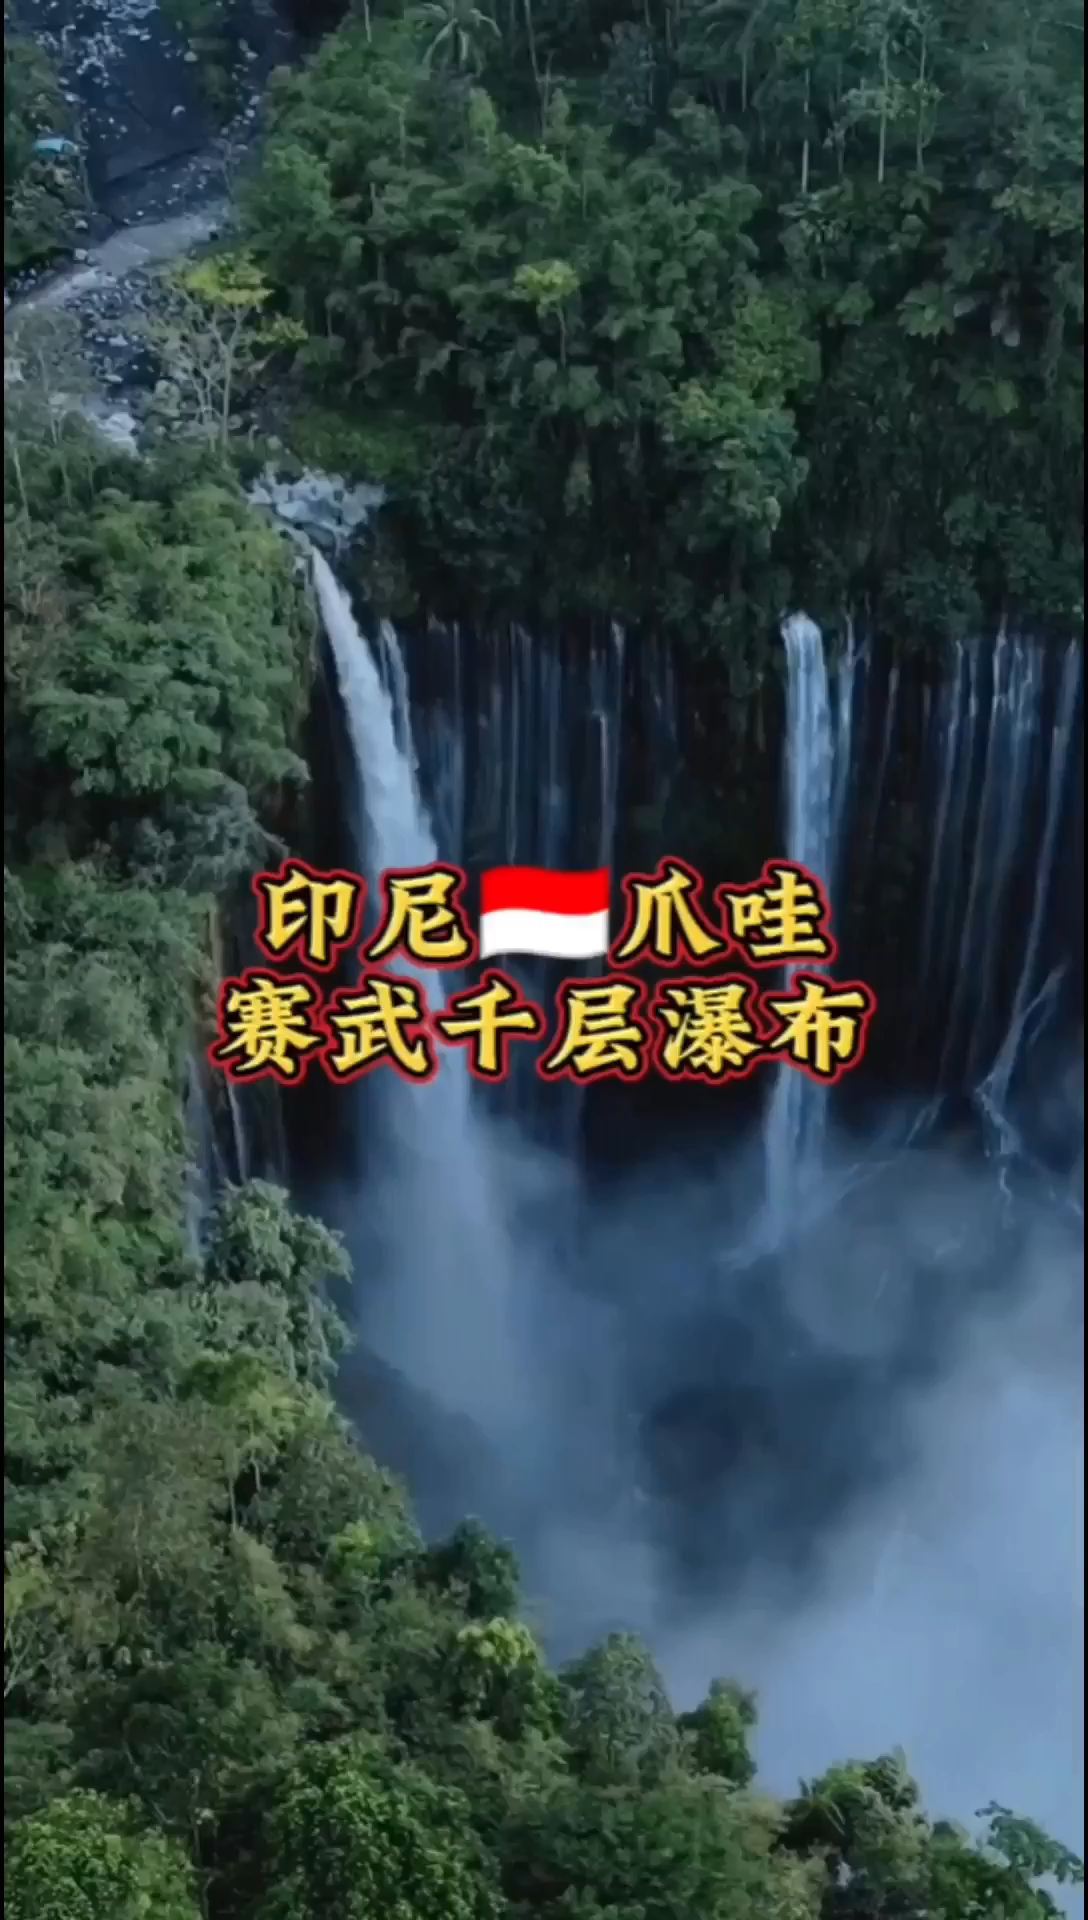 到印尼🇮🇩爪哇体验120米高气势磅礴的千层瀑布